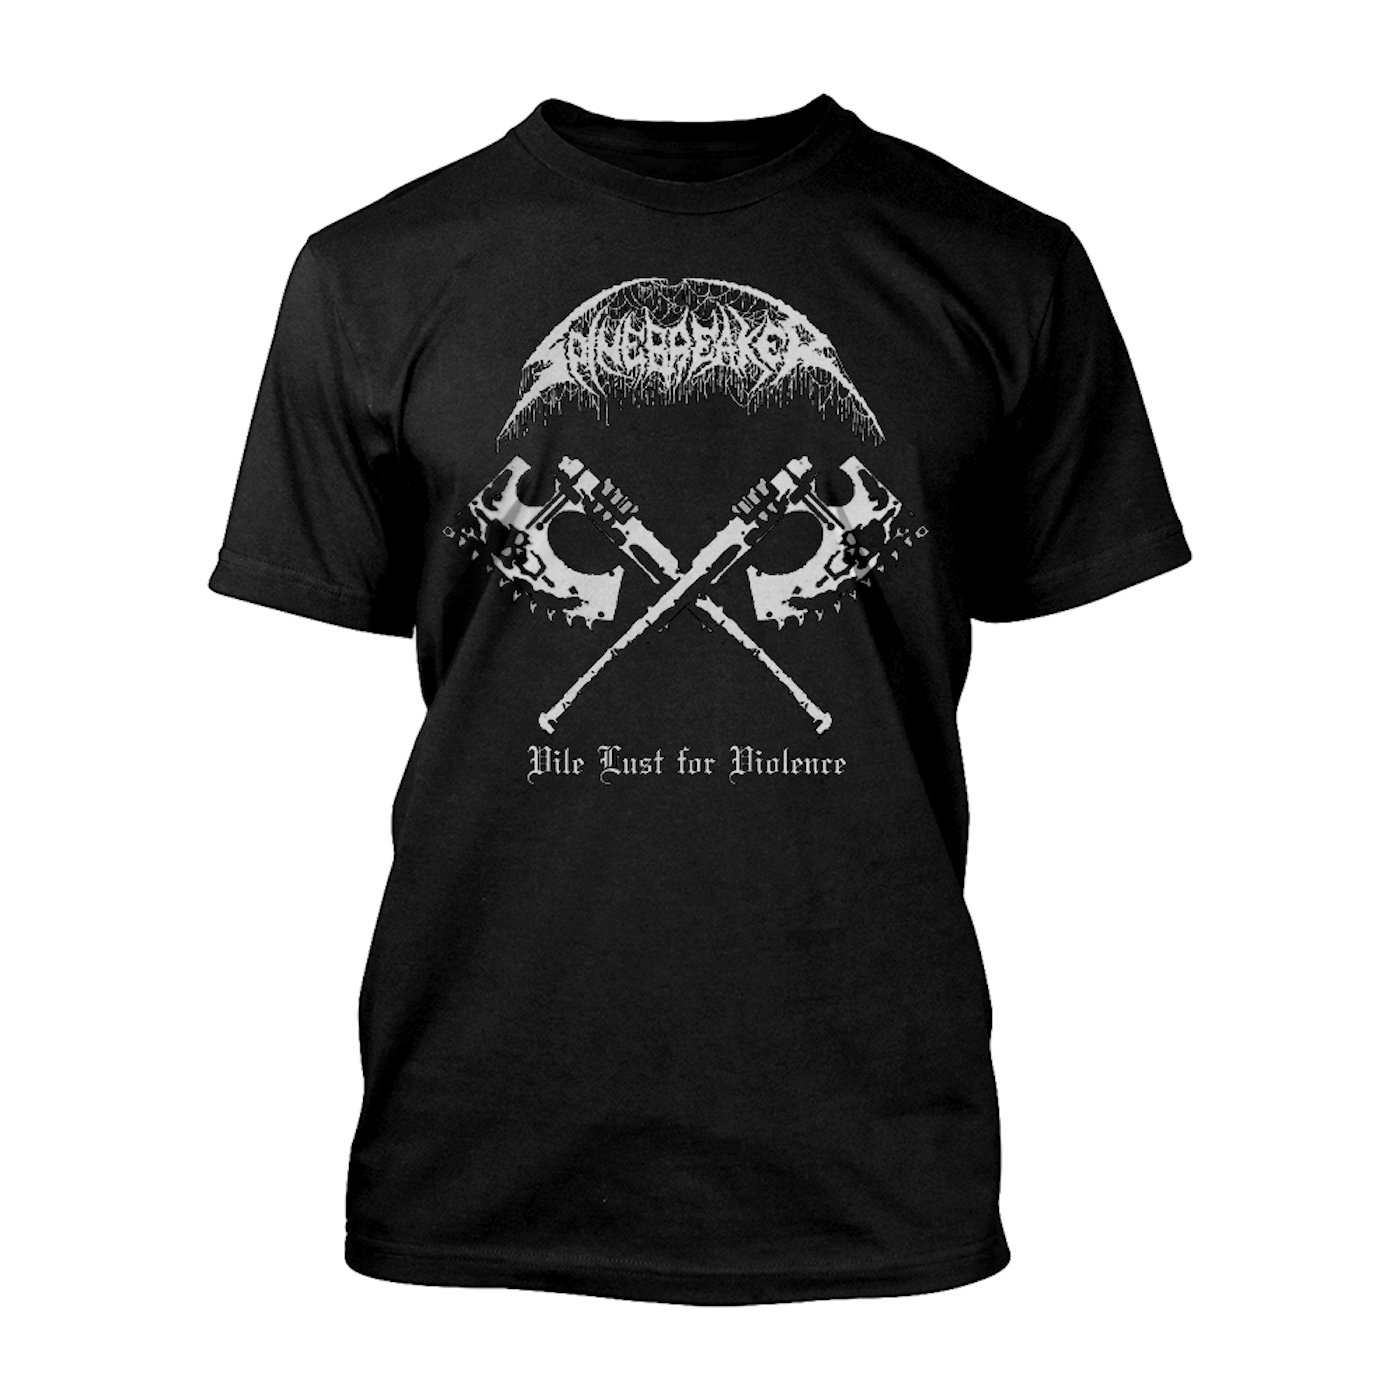 Spinebreaker "Vile Lust for Violence" T-Shirt